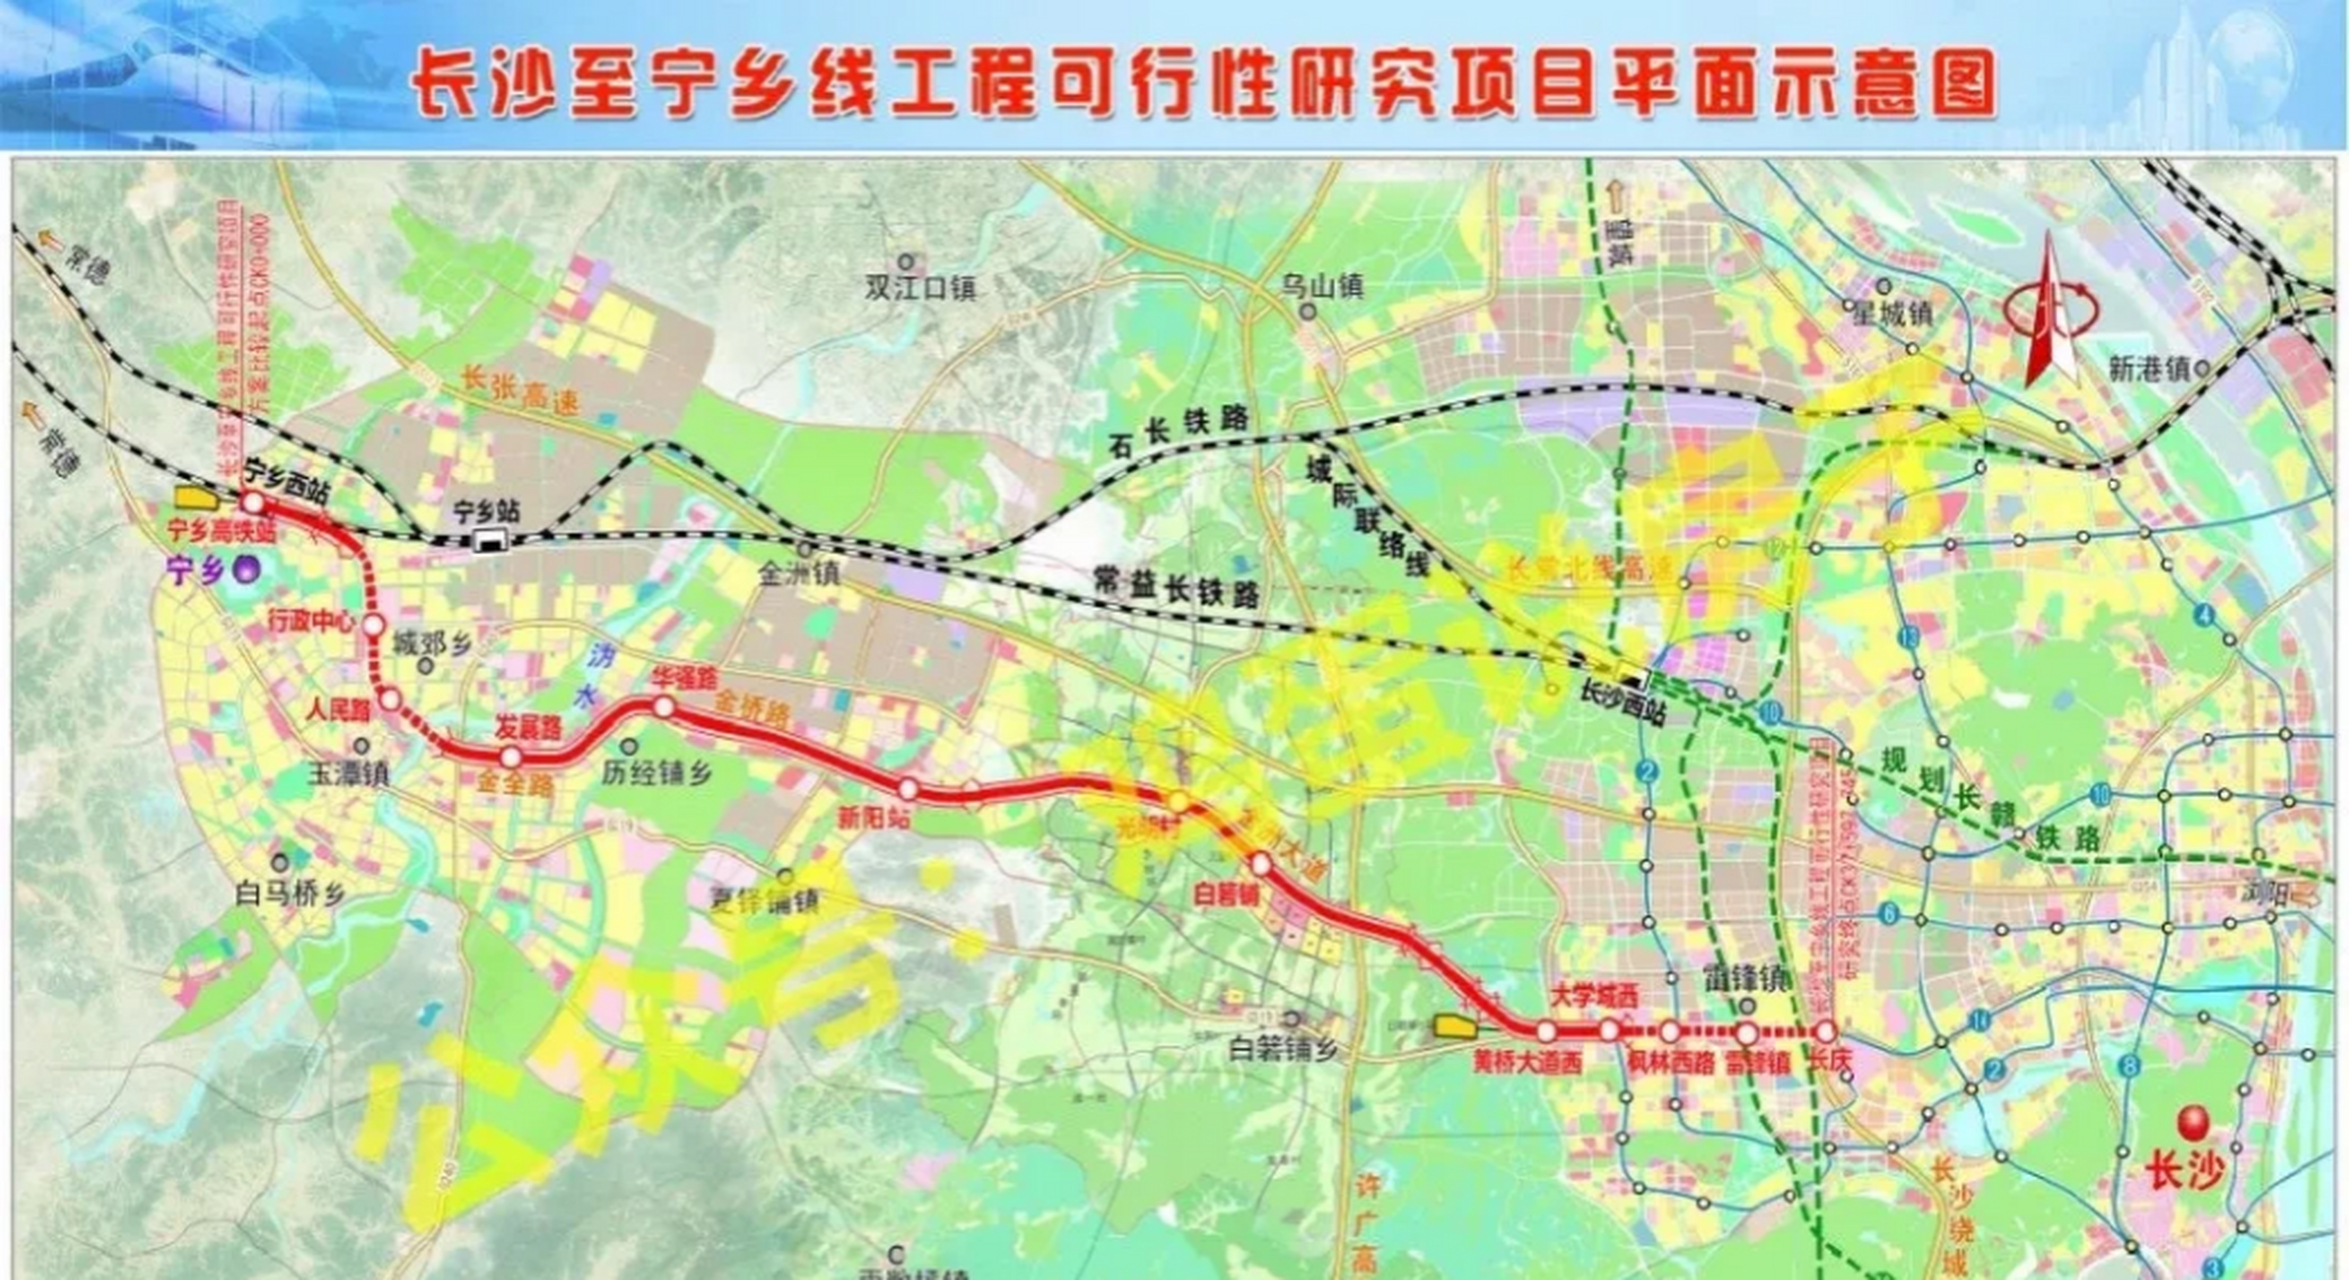 线路采用磁浮制式,设计速度为140公里每小时,宁乡市区设车站5座,人民